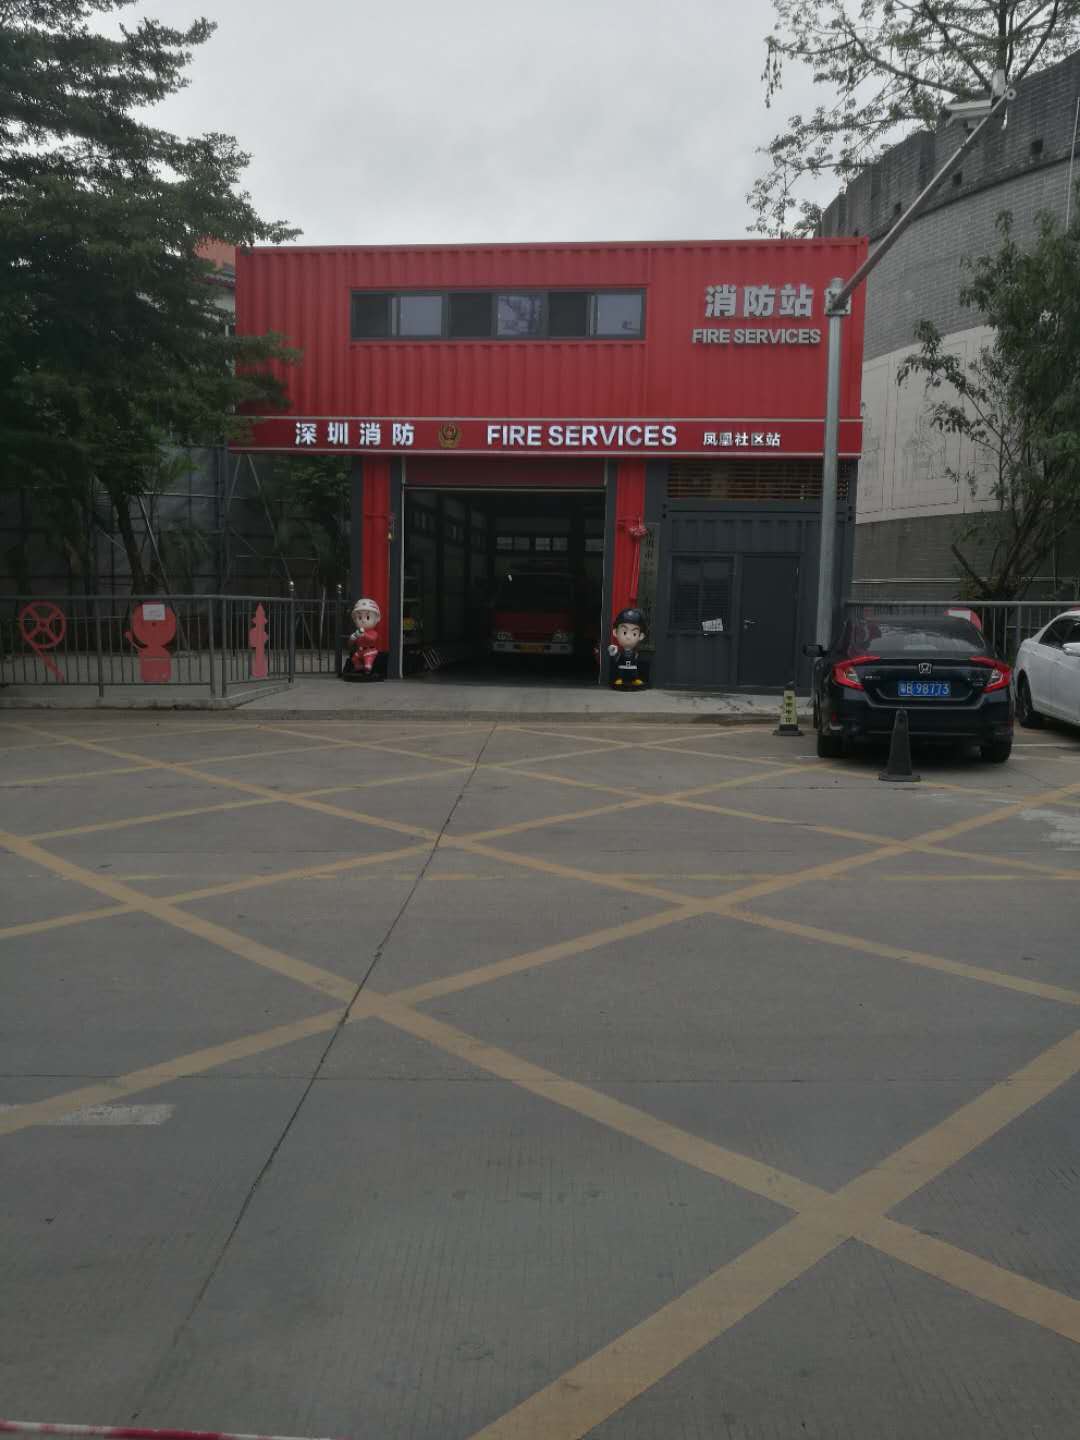 在深圳见到一些小型的消防站,非常吸引人们的眼球!